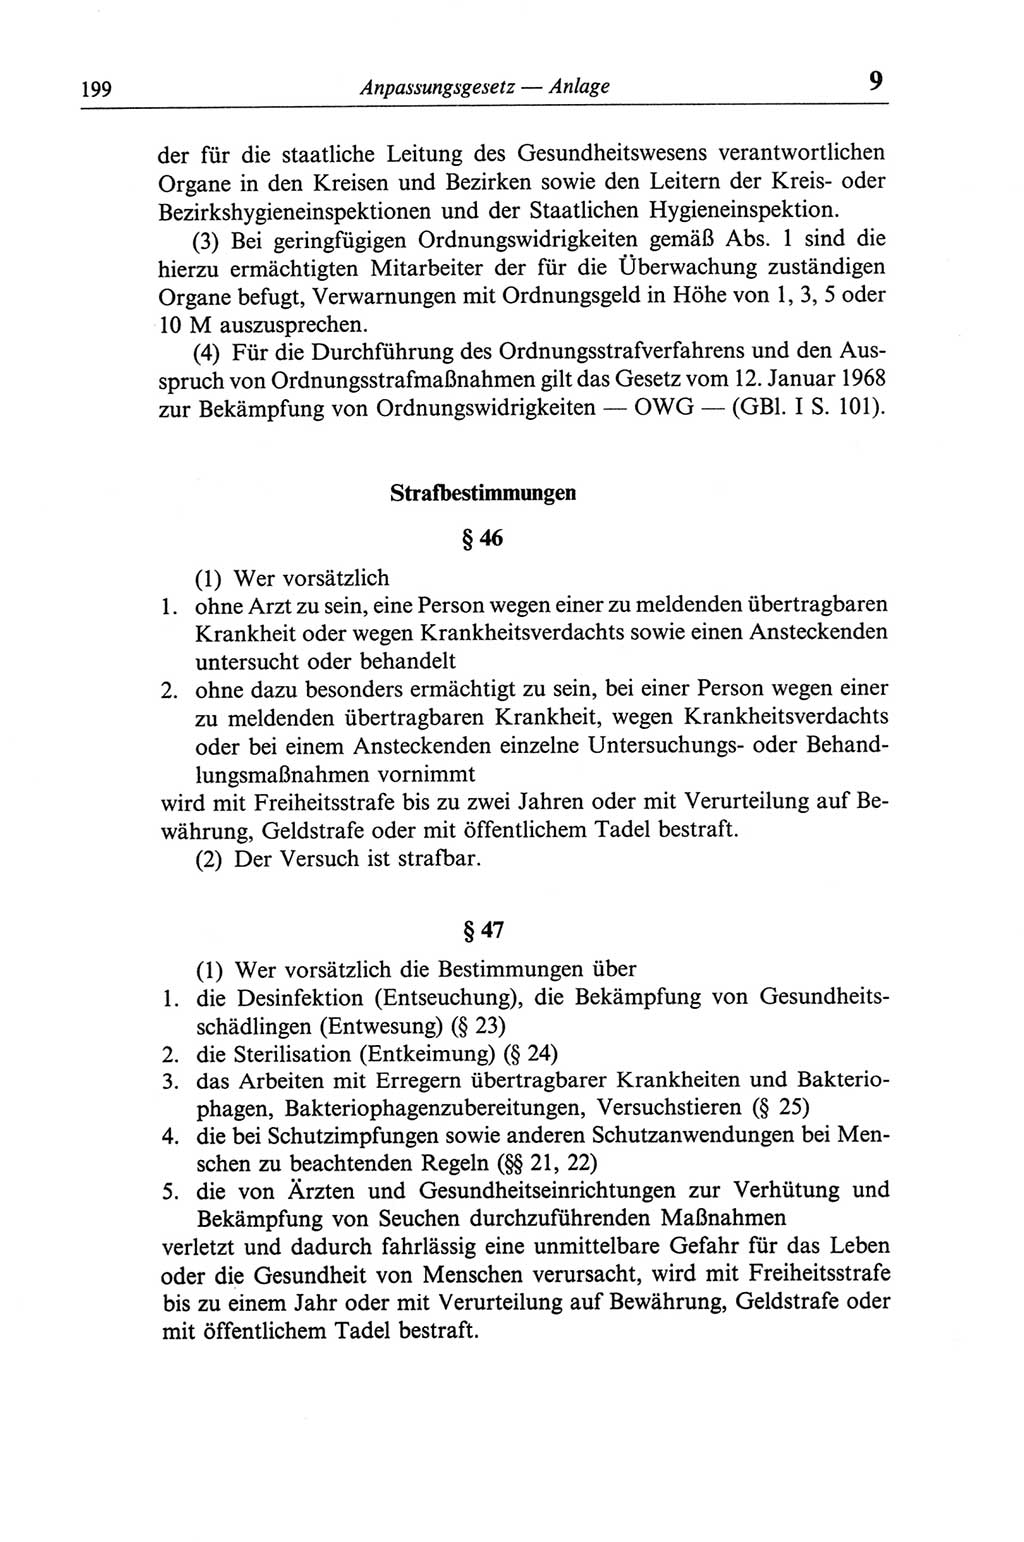 Strafgesetzbuch (StGB) der Deutschen Demokratischen Republik (DDR) und angrenzende Gesetze und Bestimmungen 1968, Seite 199 (StGB Ges. Best. DDR 1968, S. 199)